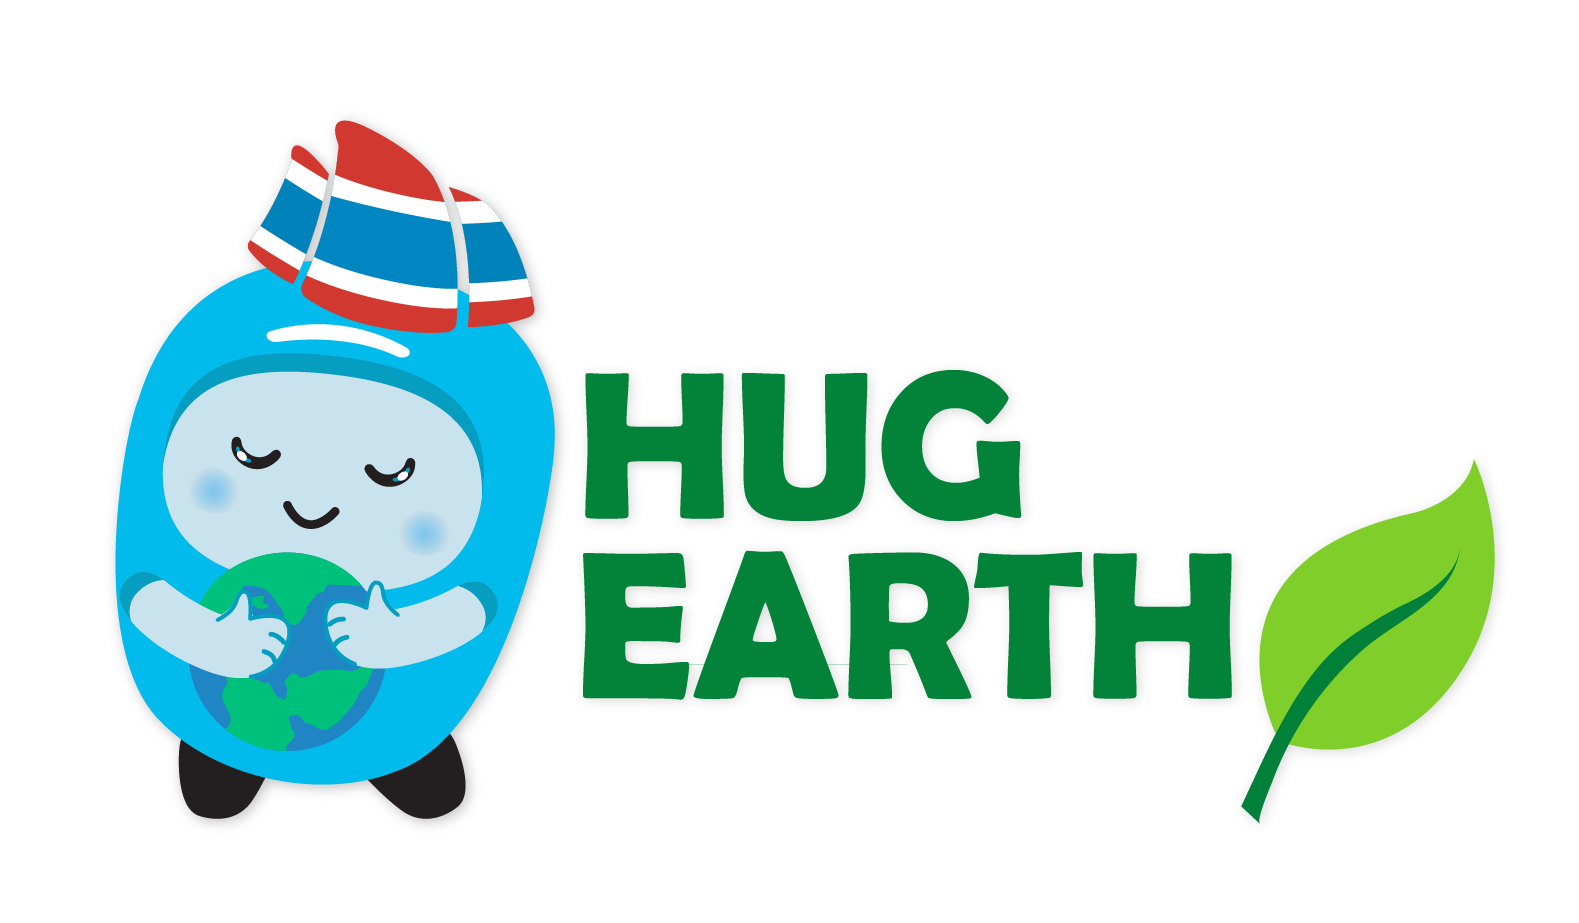 Hug Earth